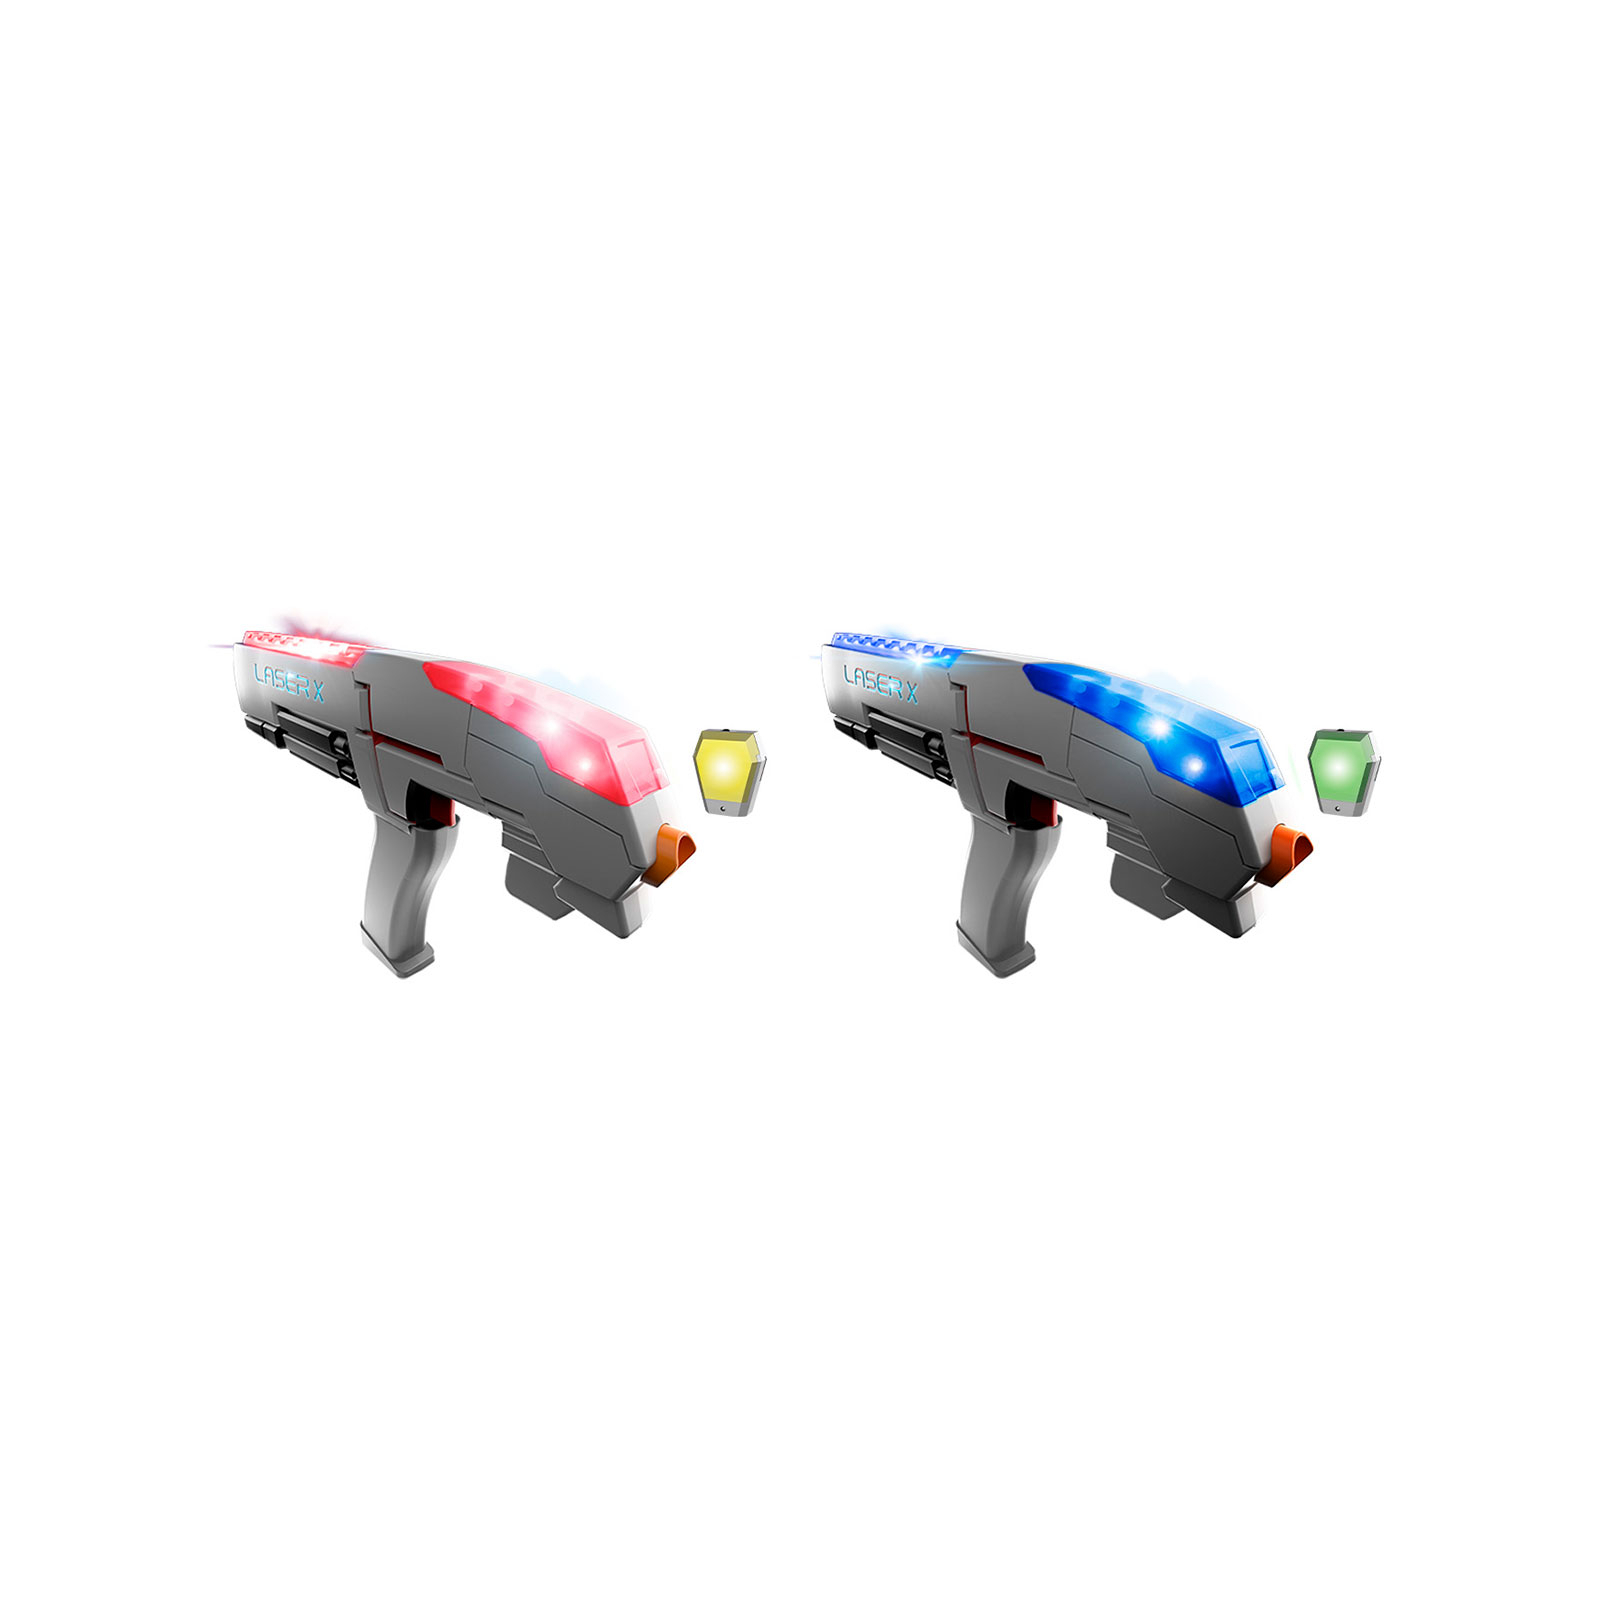 Іграшкова зброя Laser X для лазерних боїв Sport для двох гравців (88842)